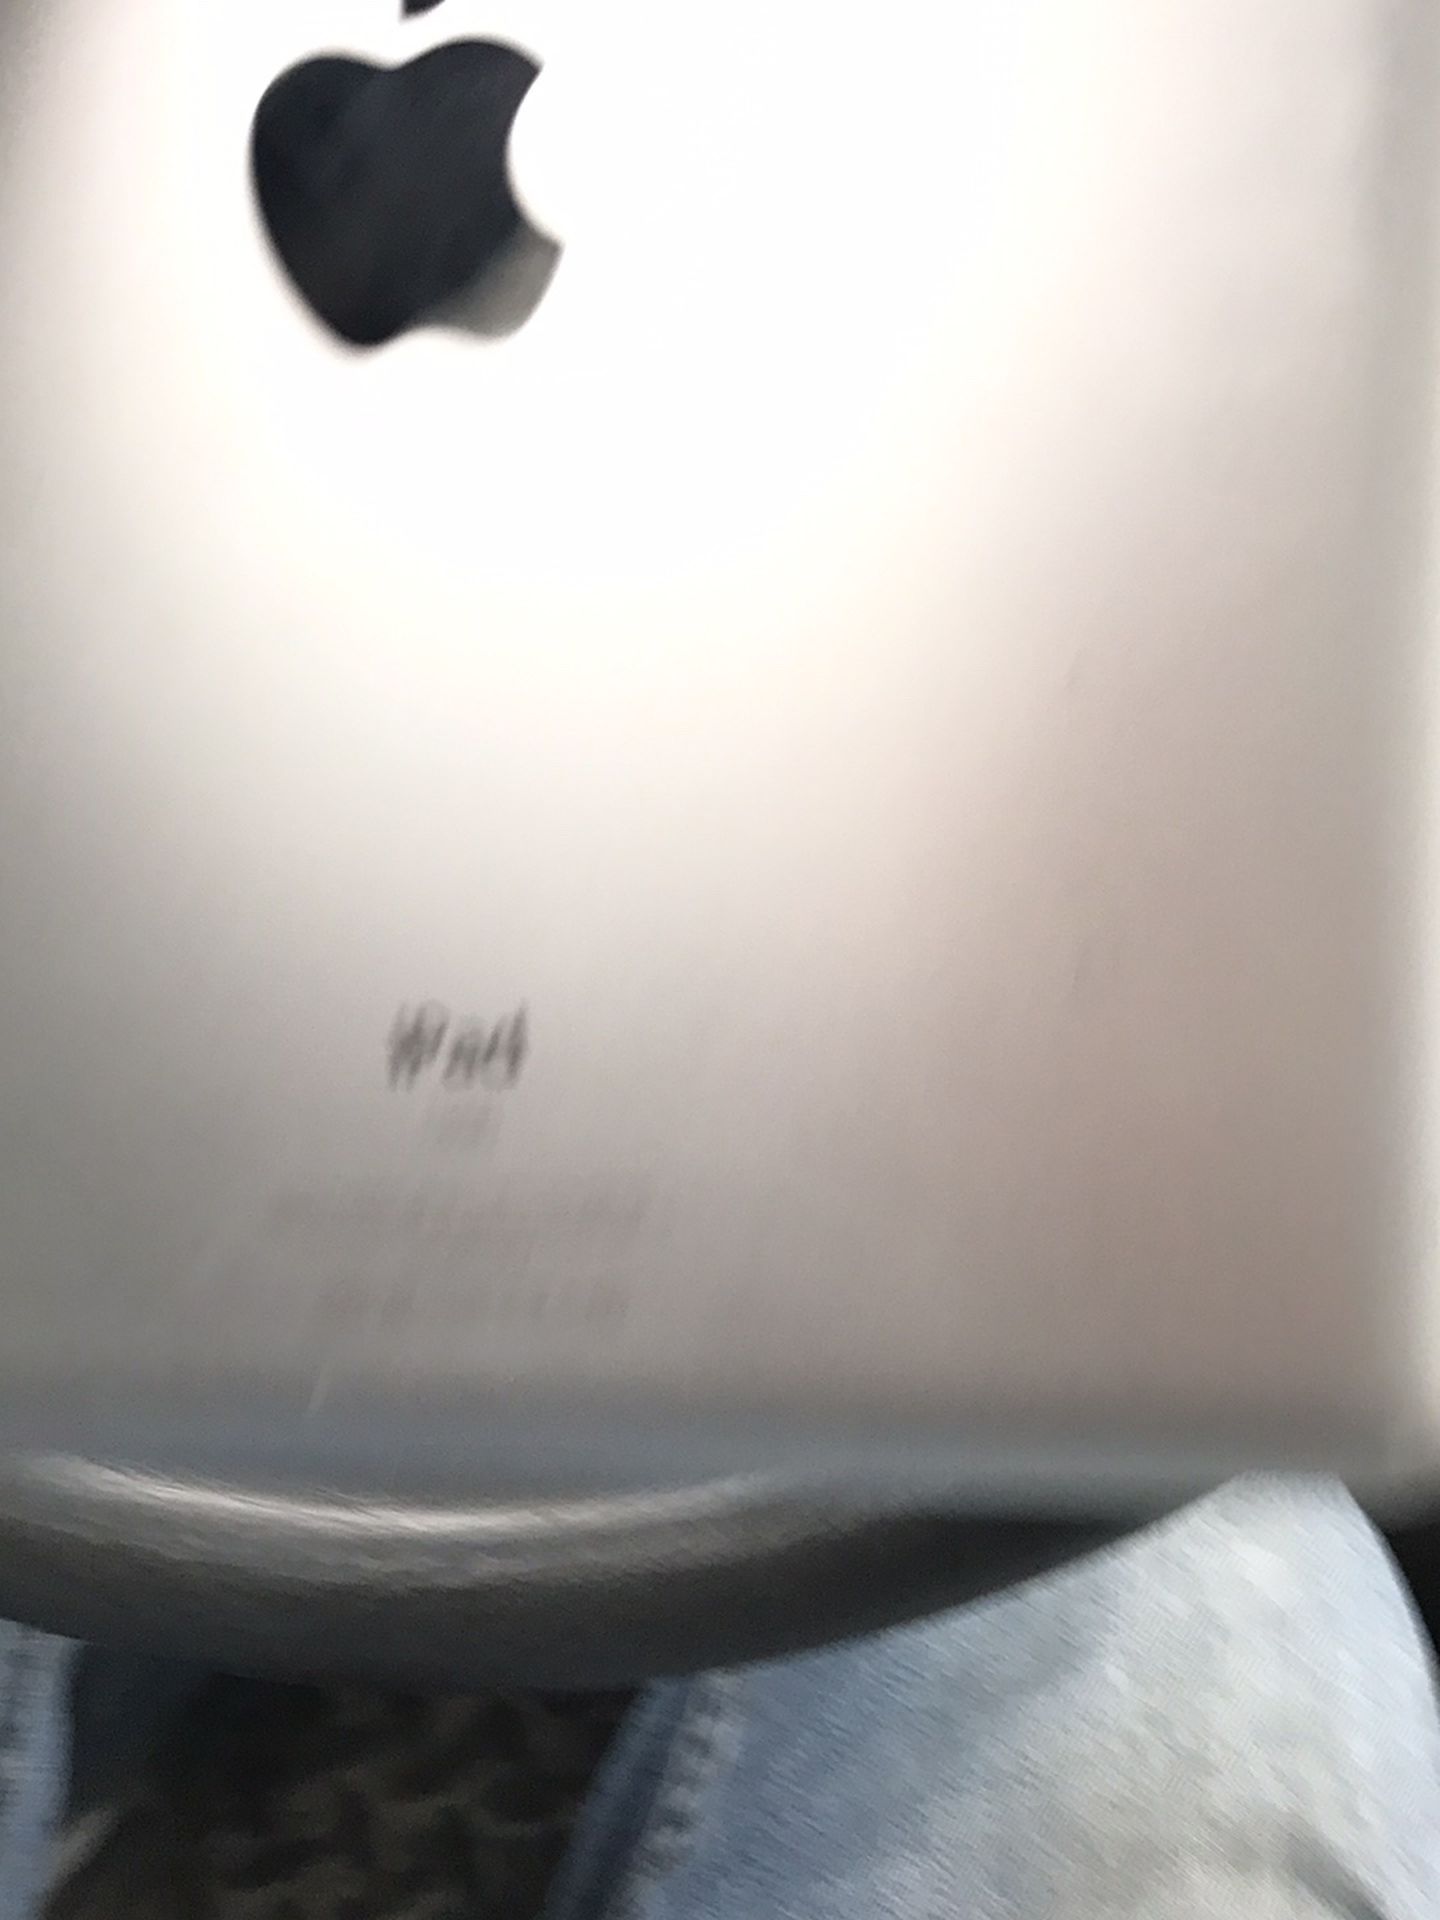 iPad 16 GB, locked forgot the passcode